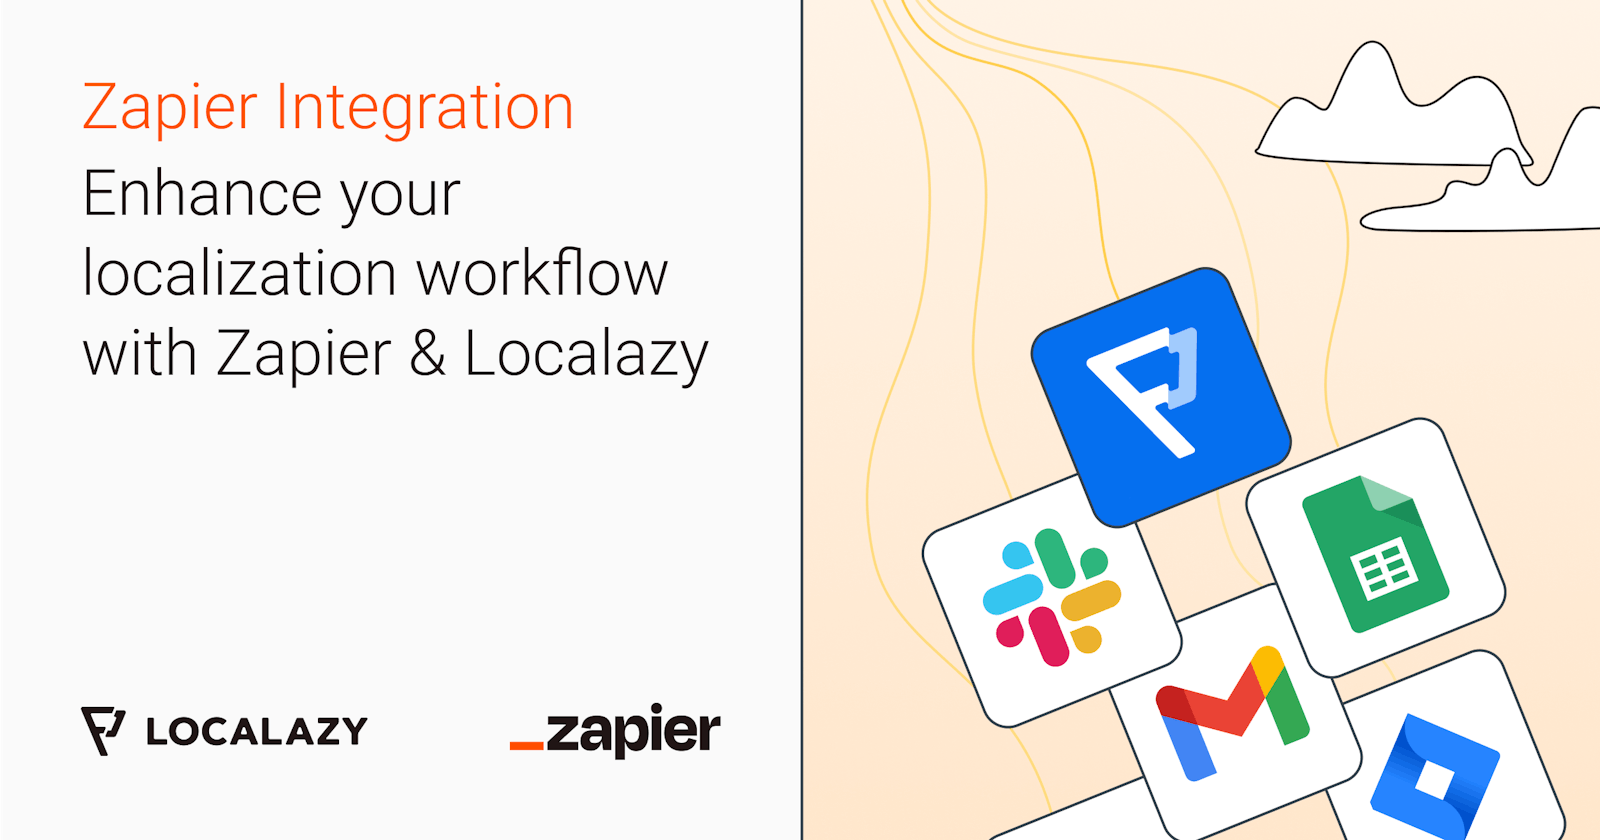 Enhance your localization workflow with Zapier & Localazy